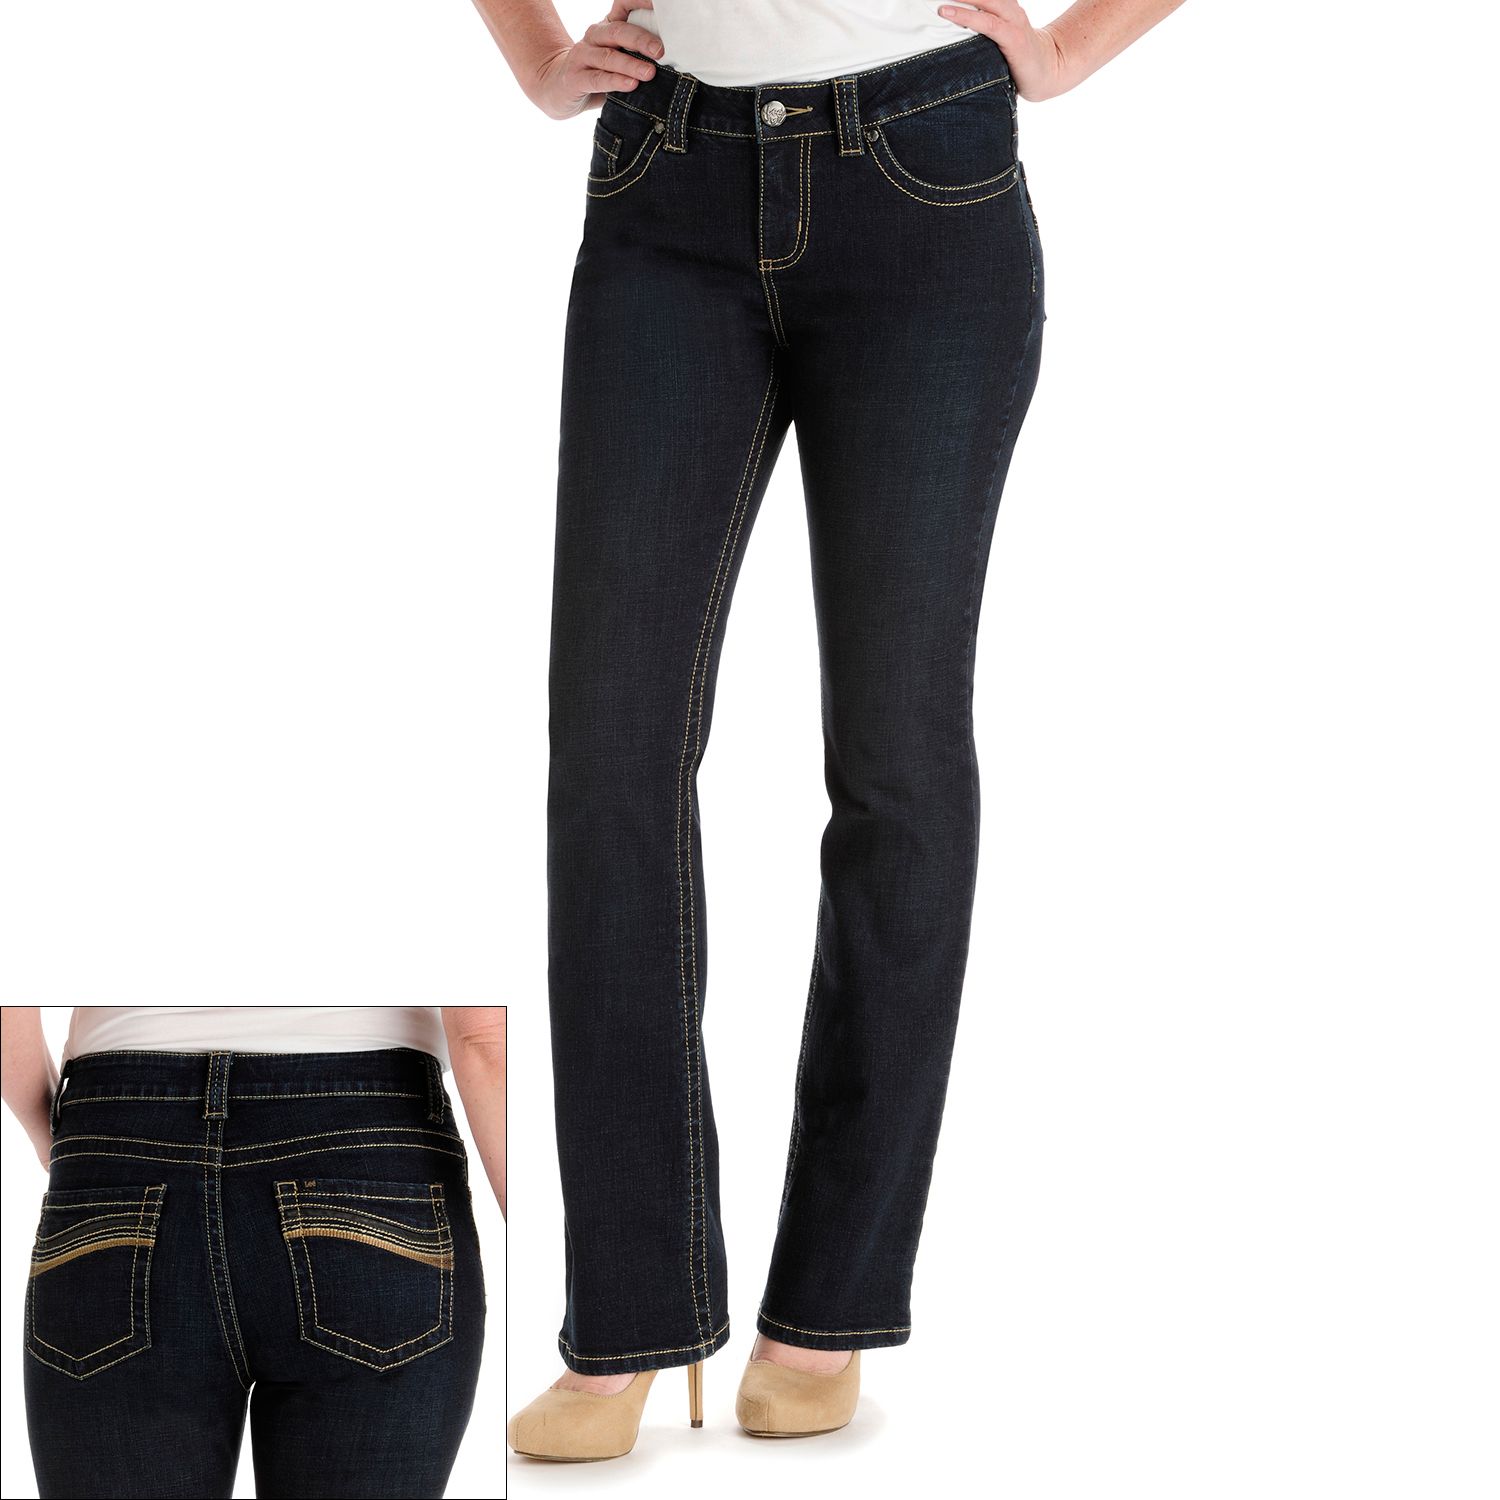 Lee Slender Secret Bootcut Jeans - Women's